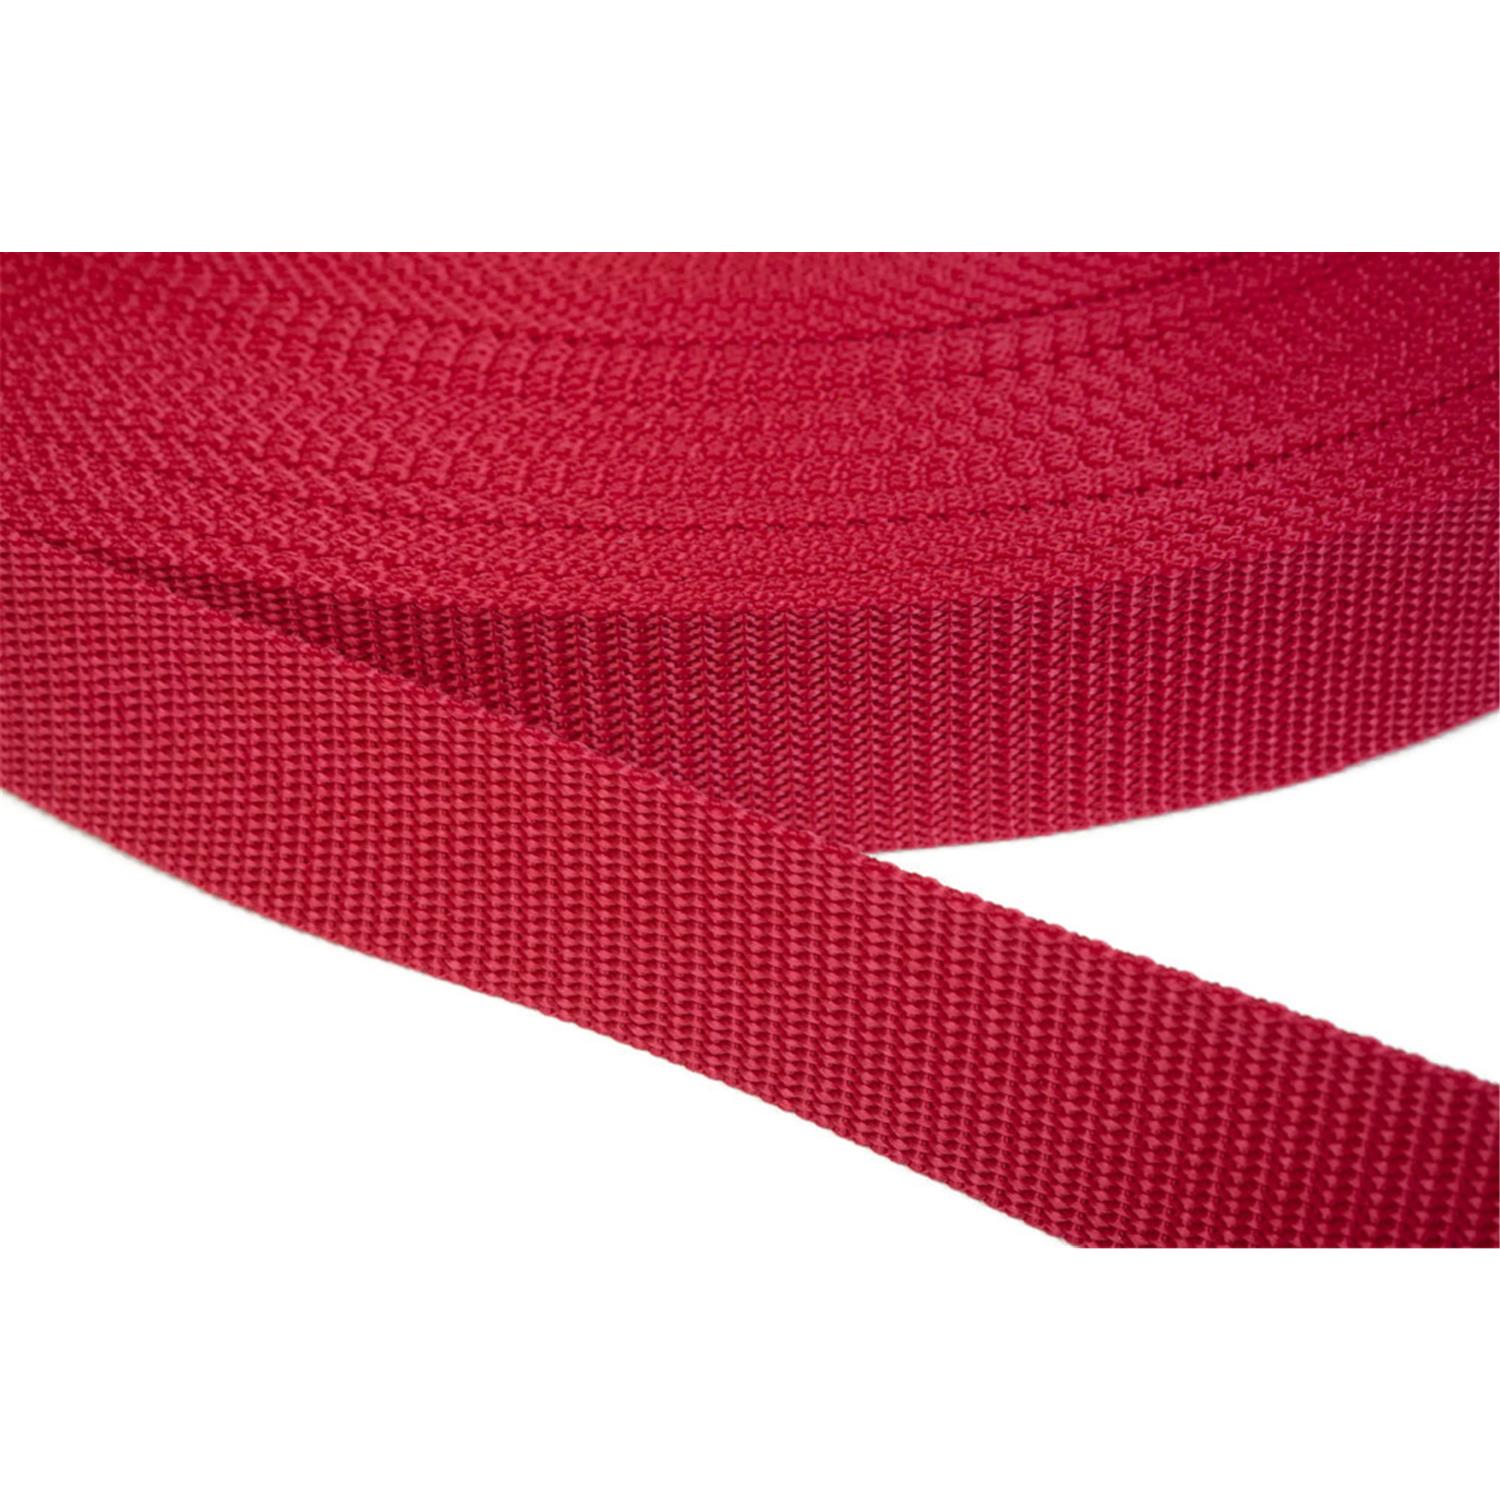 Gurtband 25mm breit aus Polypropylen in 41 Farben 19 - rot 6 Meter